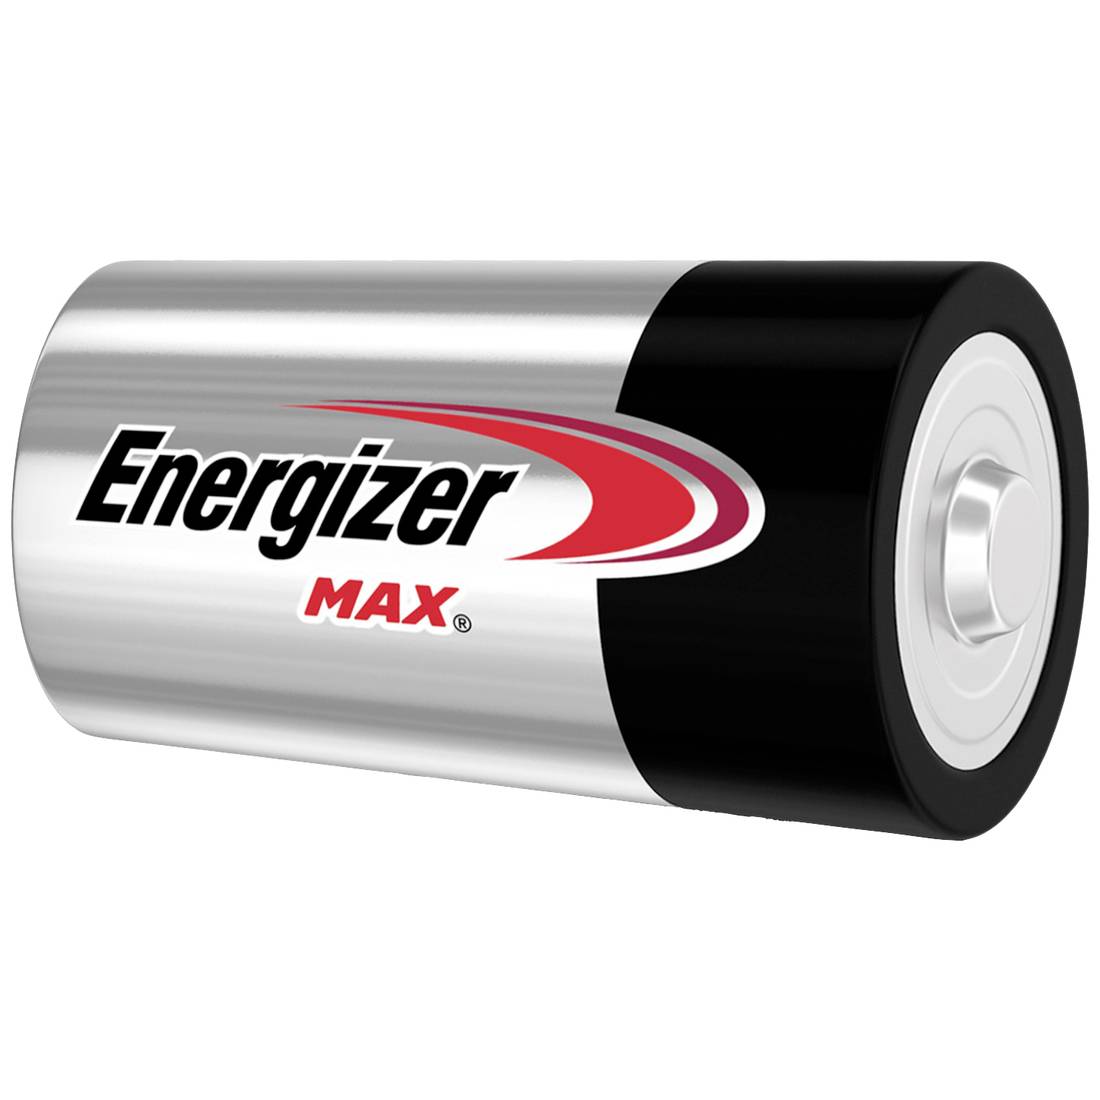 7638900410457, Energizer Energizer MAX 1.5V Alkaline D Batteries